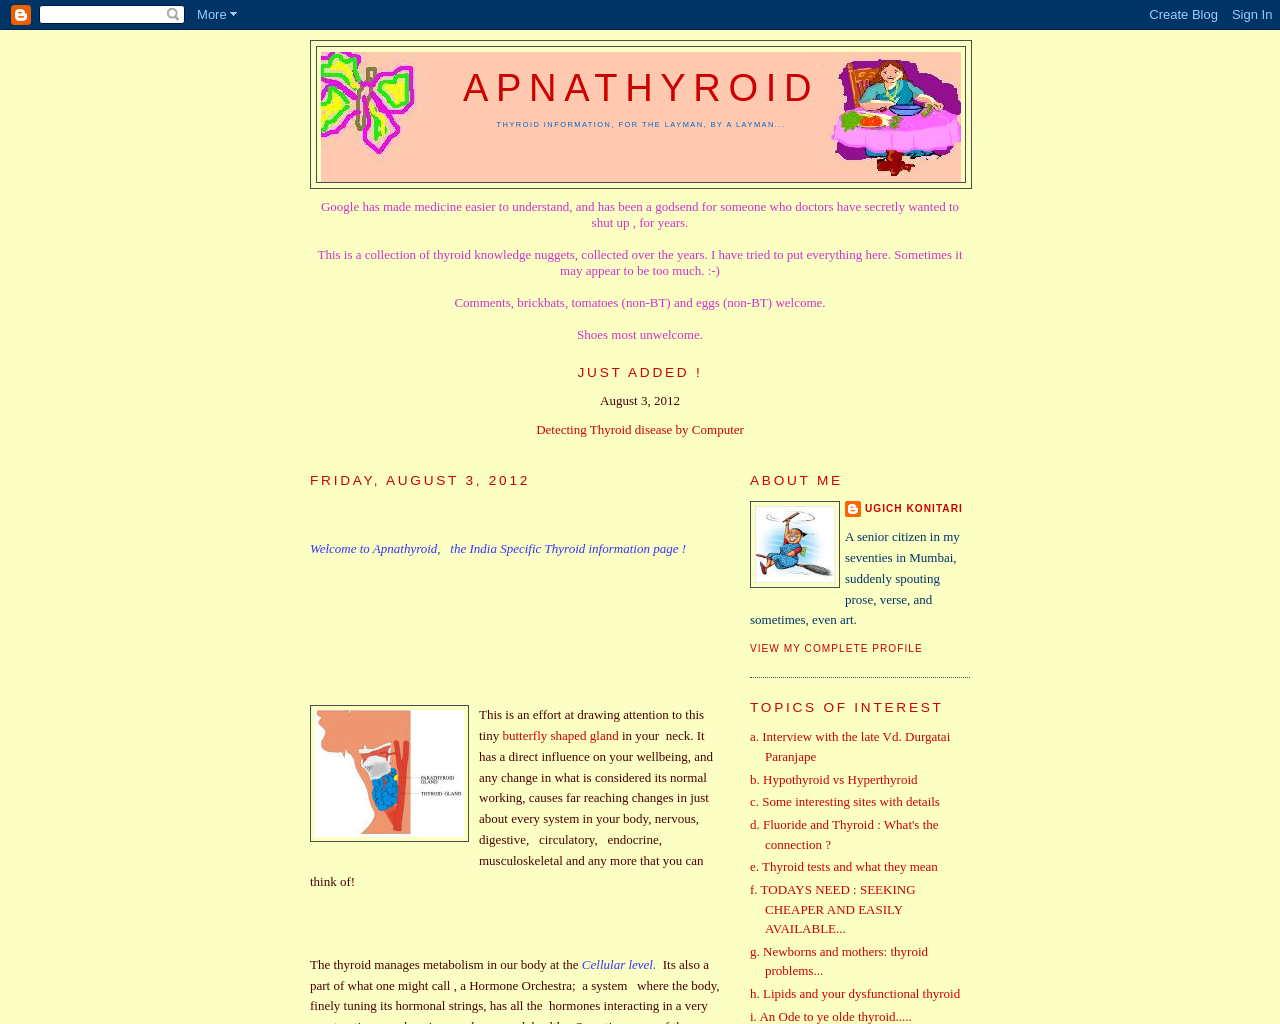 APNATHYROID